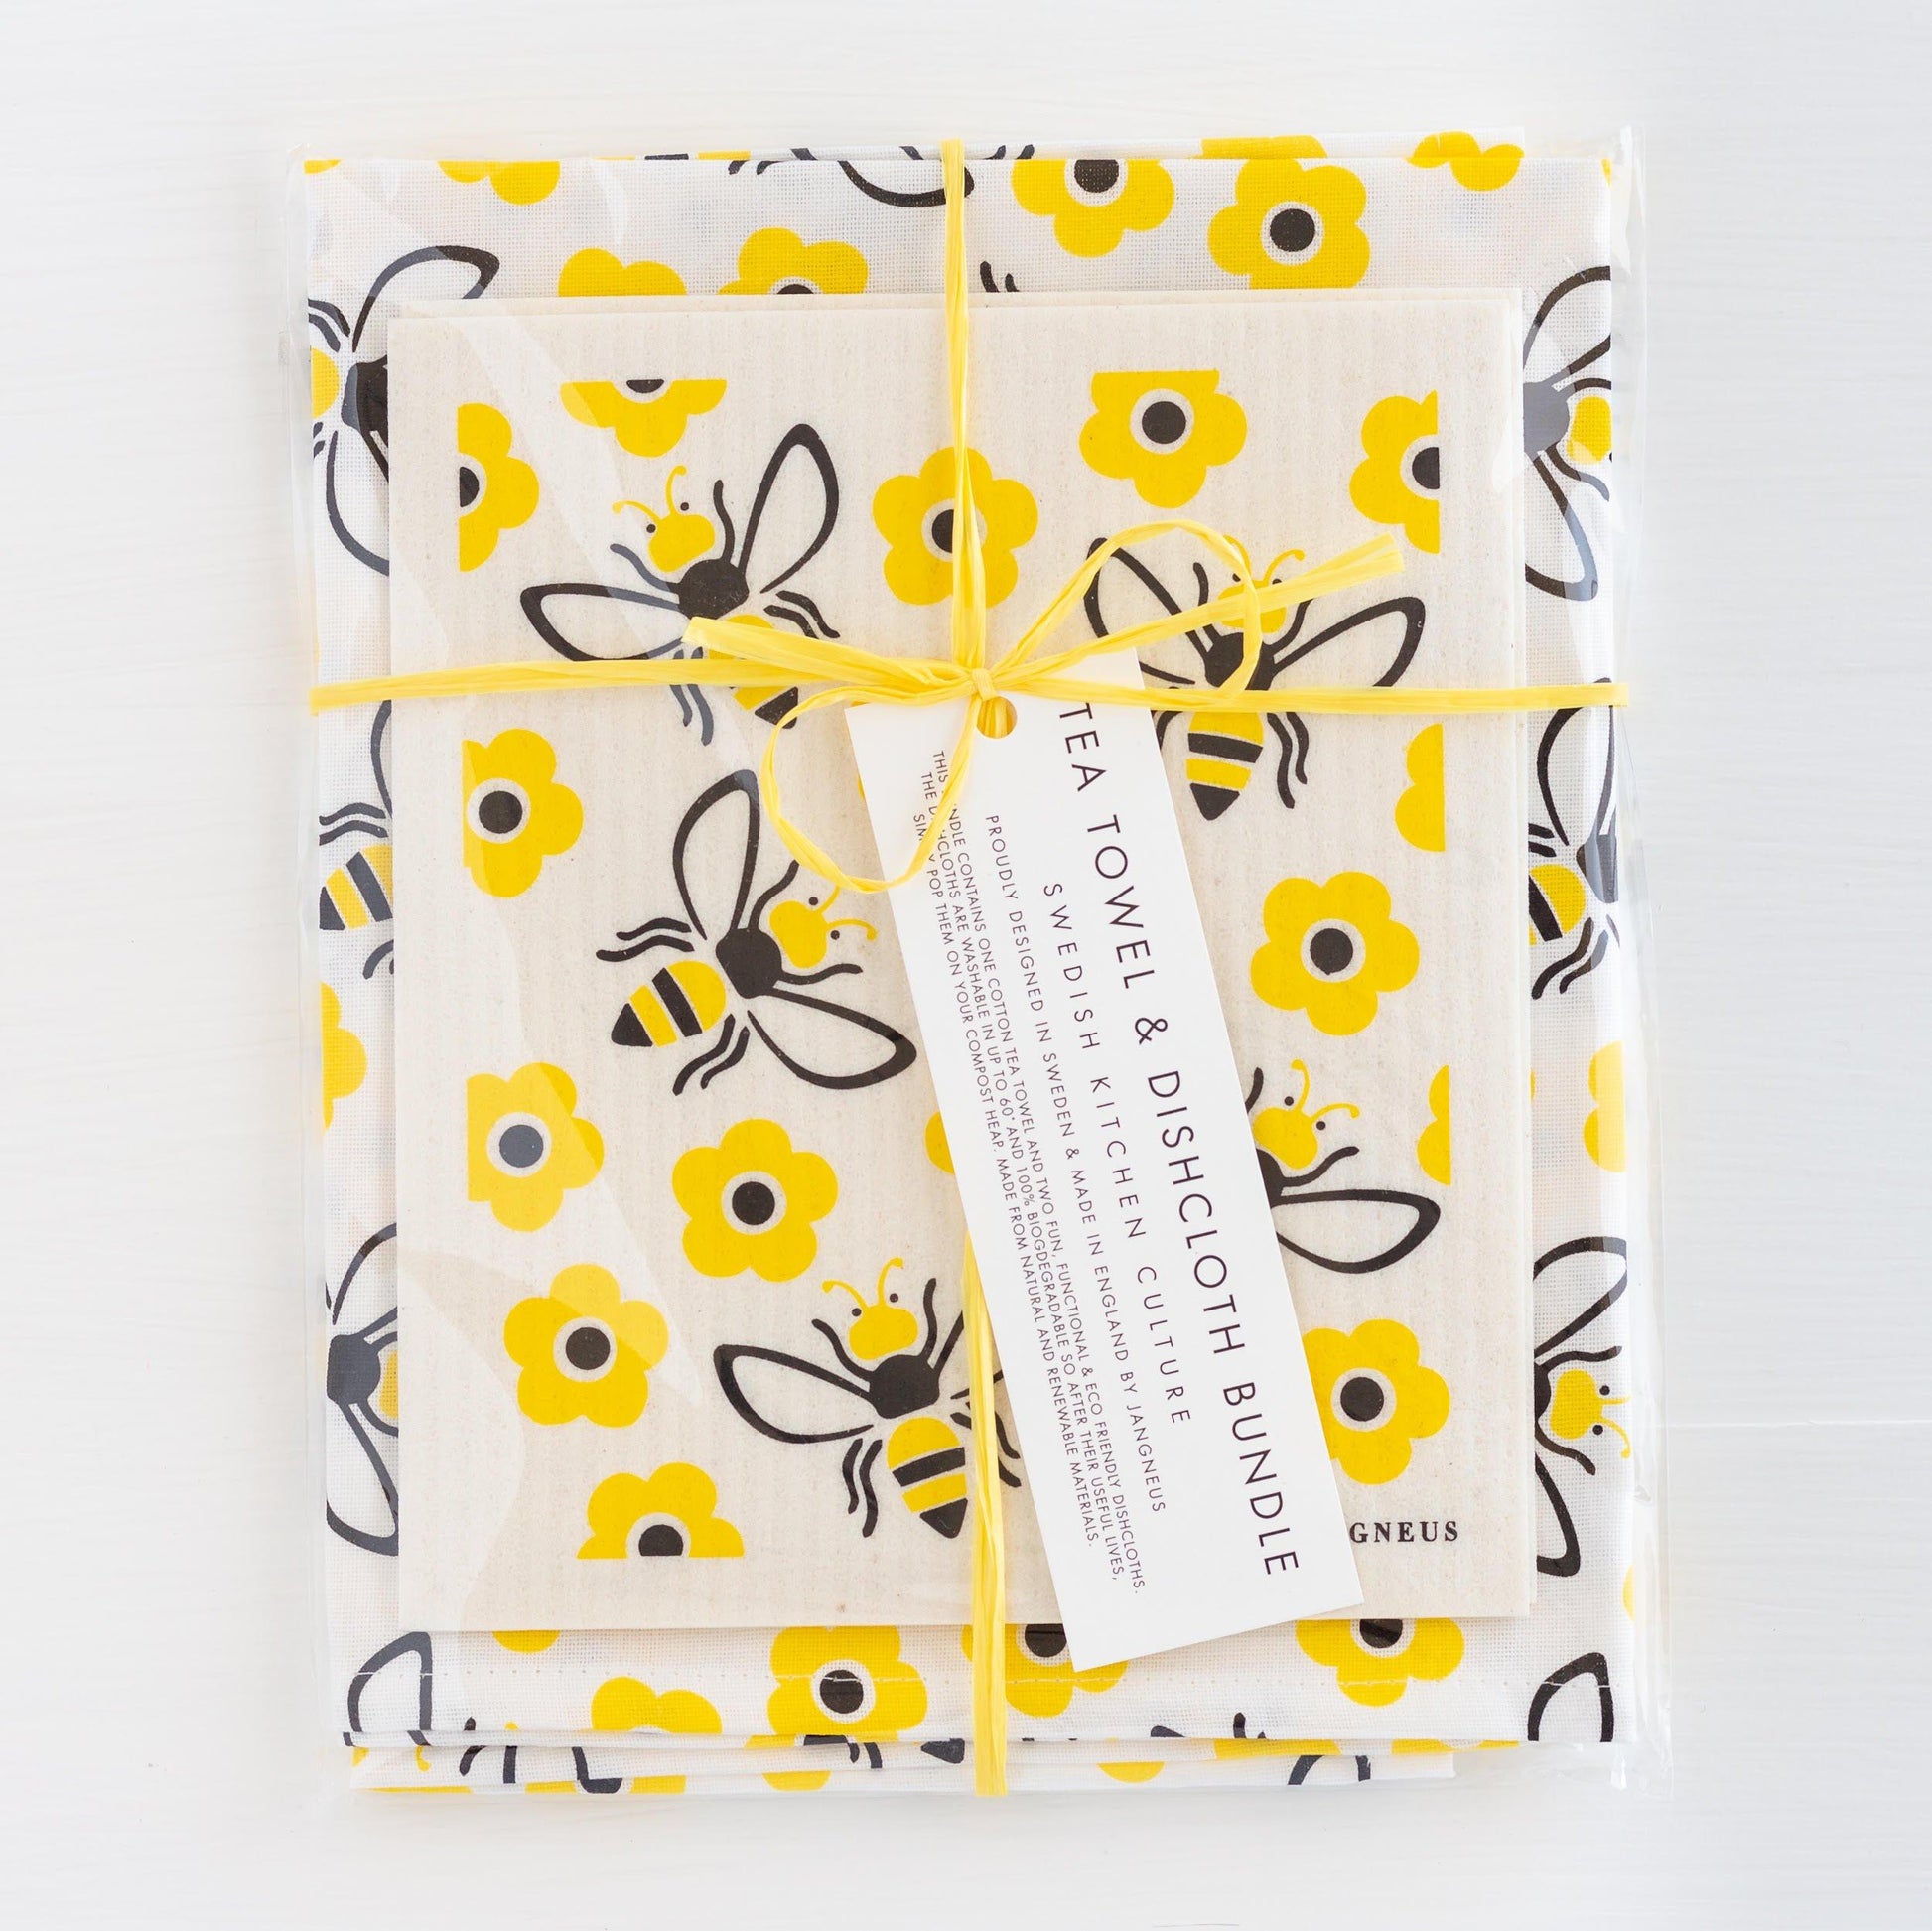 Swedish Dishcloths & Tea Towel Set – Yellow Bees – ArtfulTea